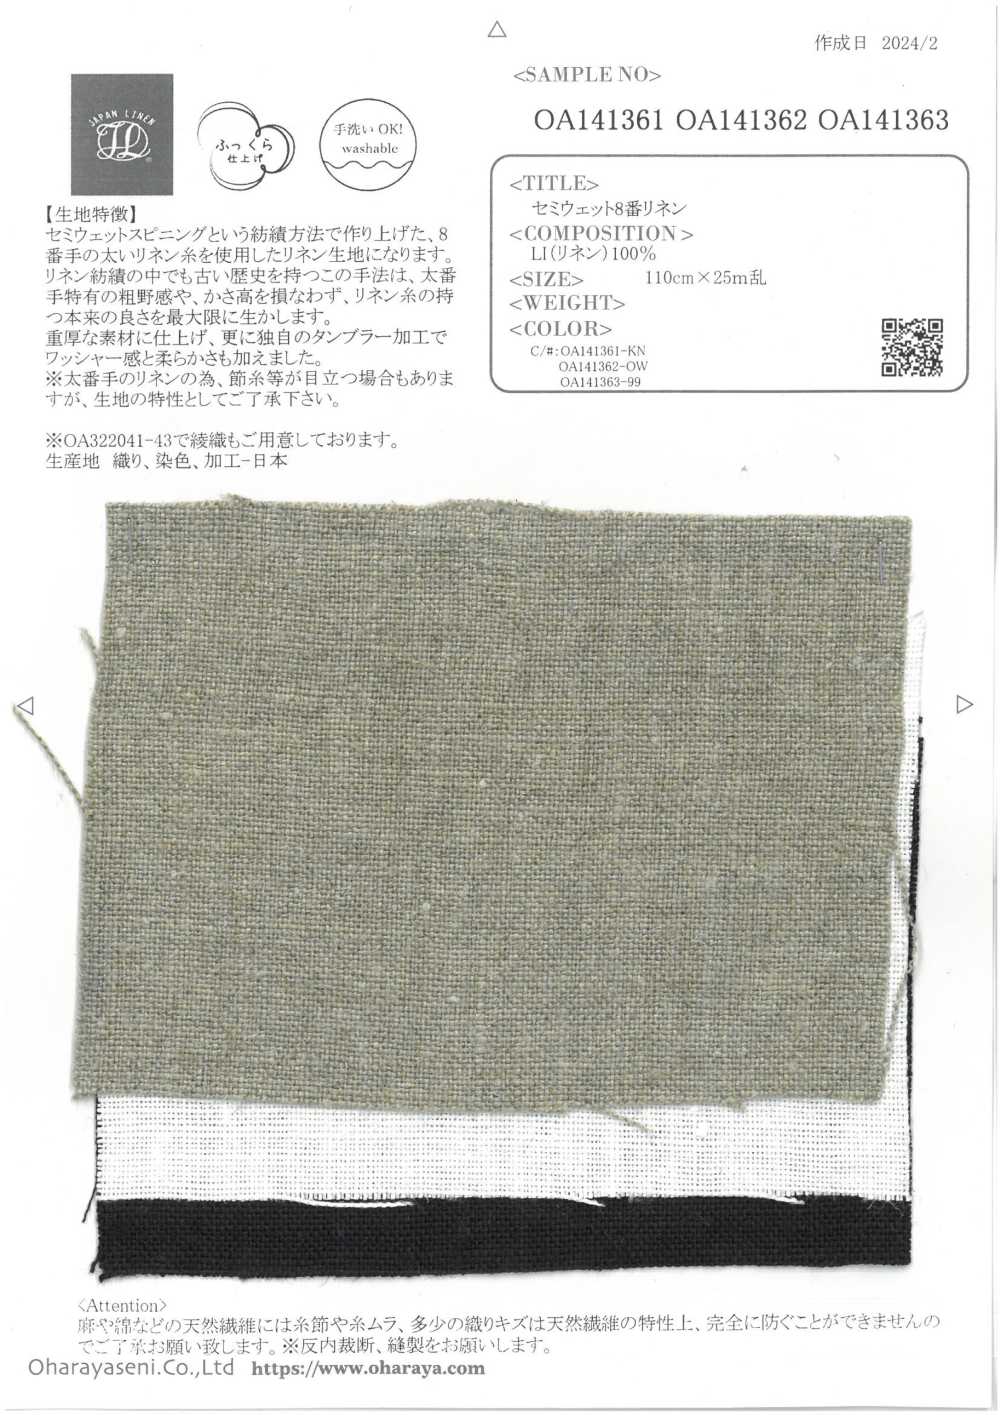 OA141361 Semi-wet No. 8 Linen[Textile / Fabric] Oharayaseni